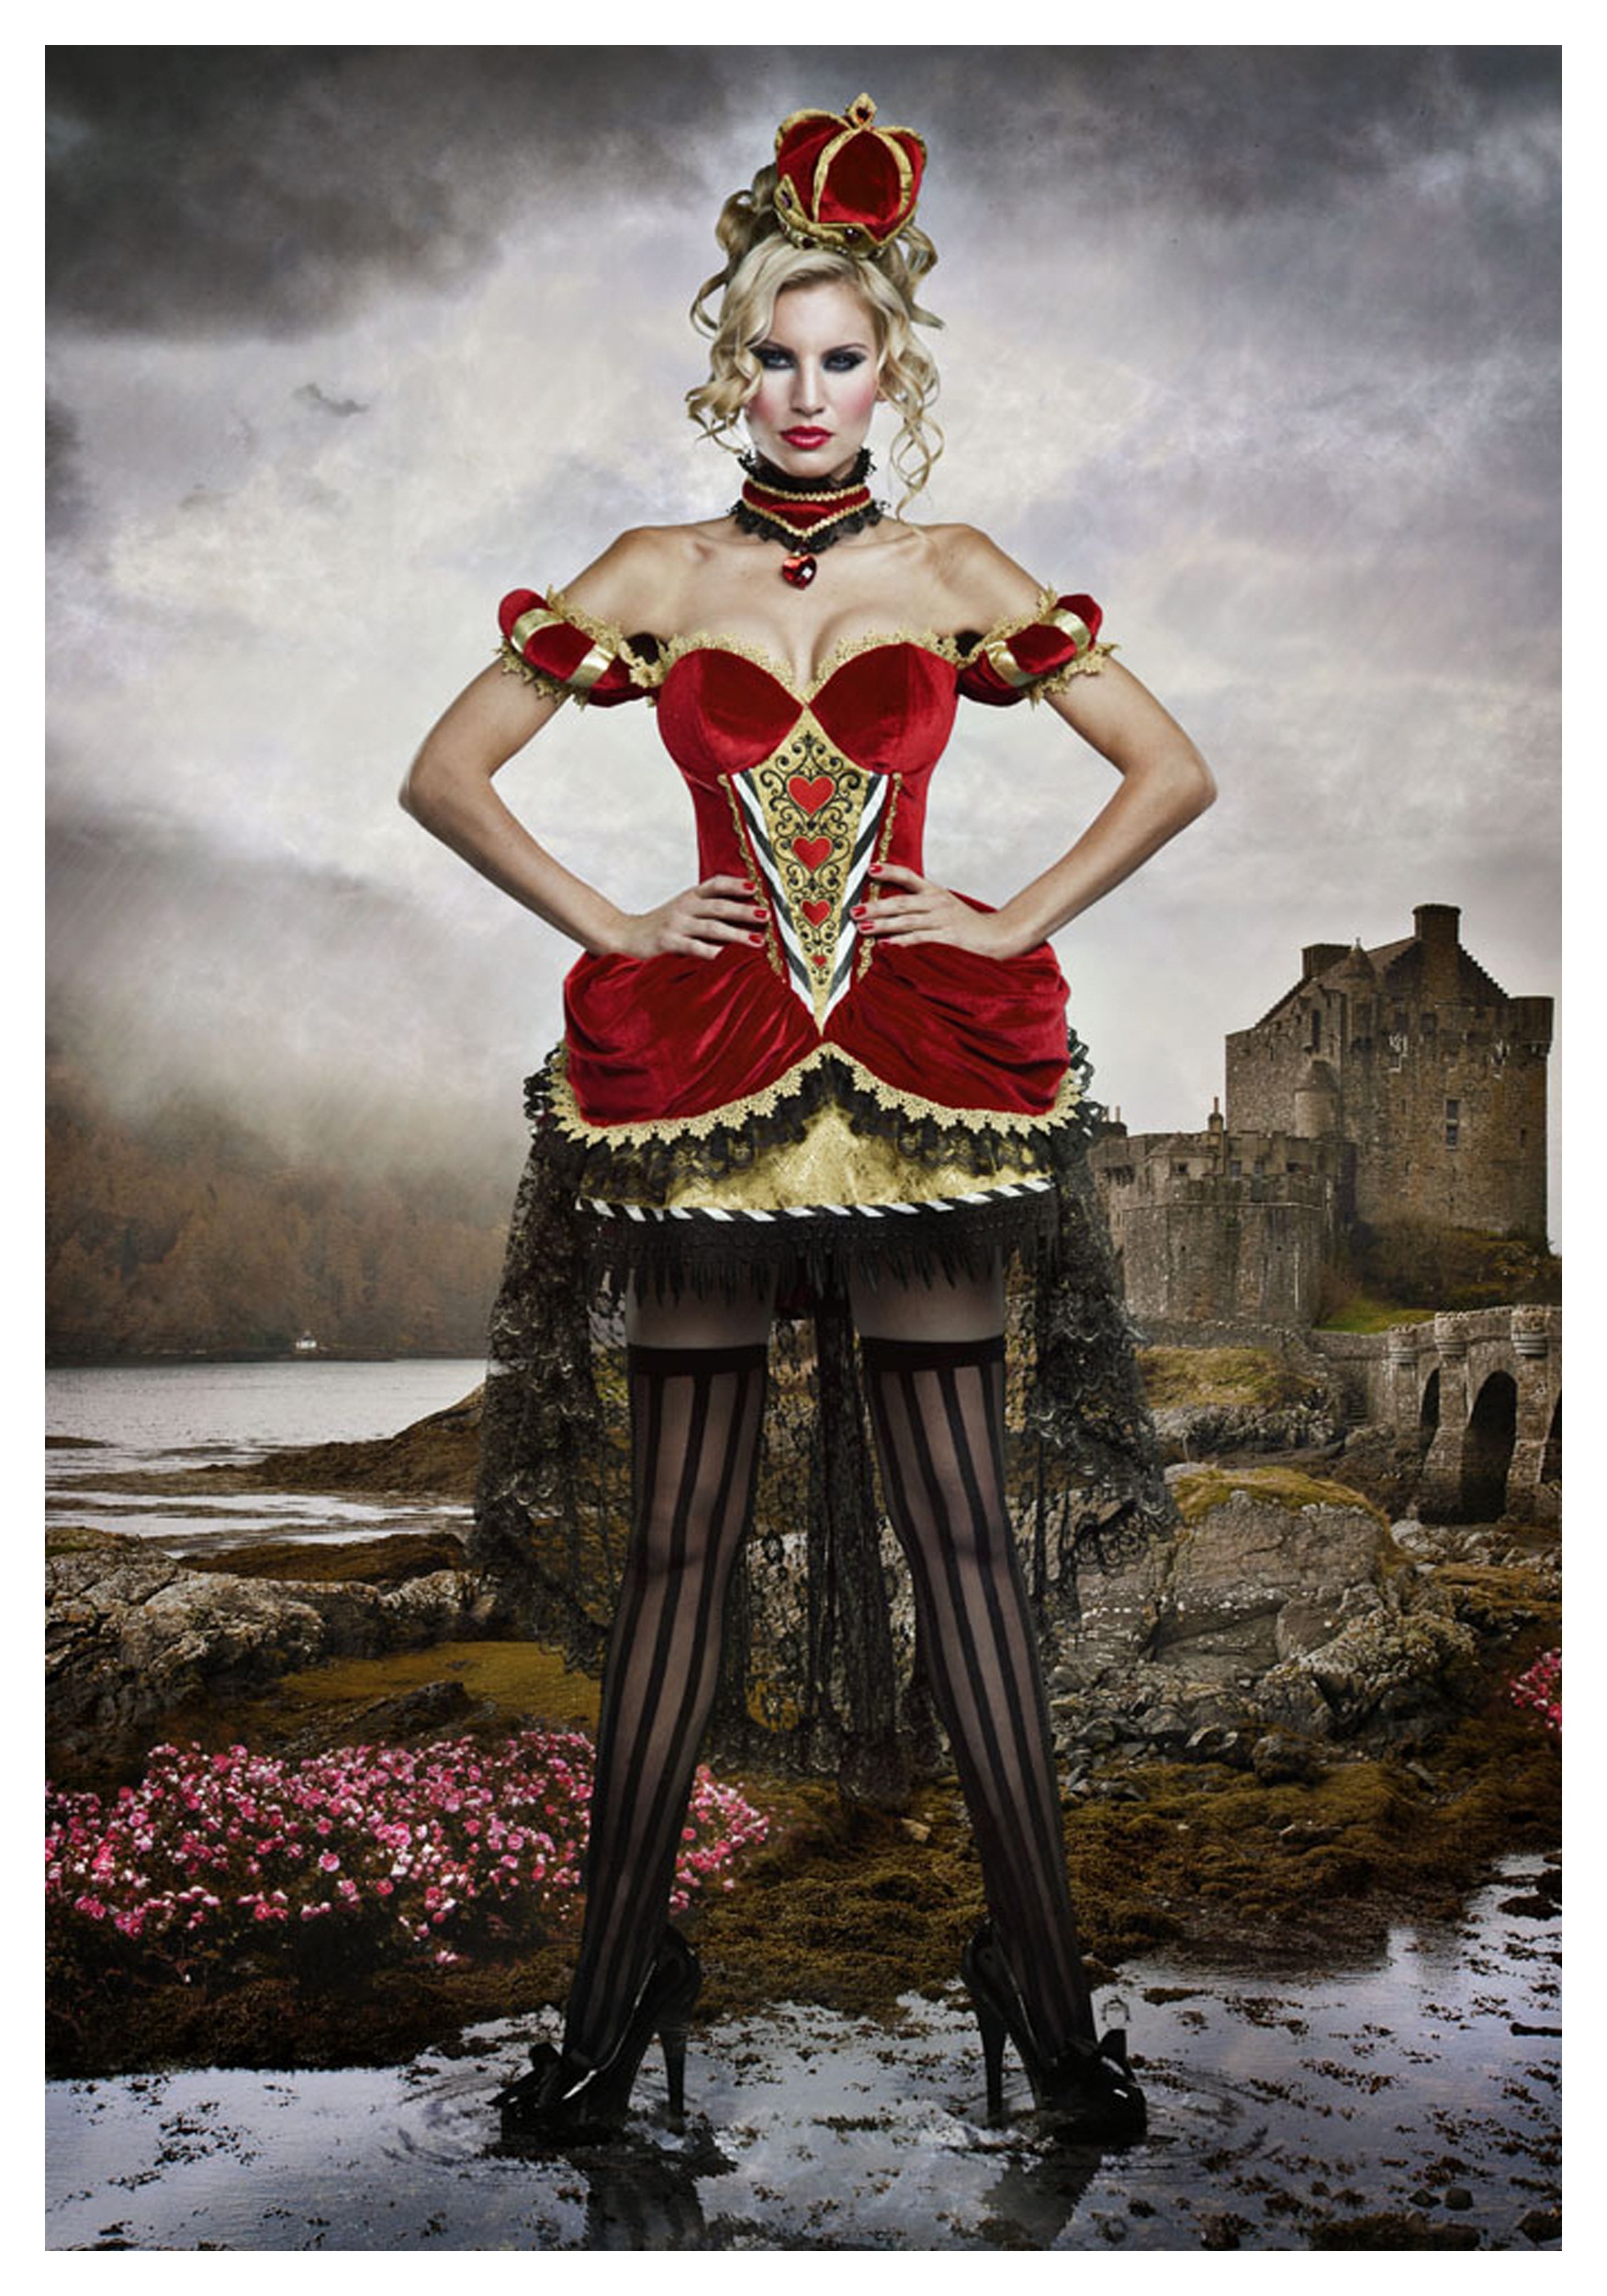 Deluxe Queen of Hearts Costume For Women